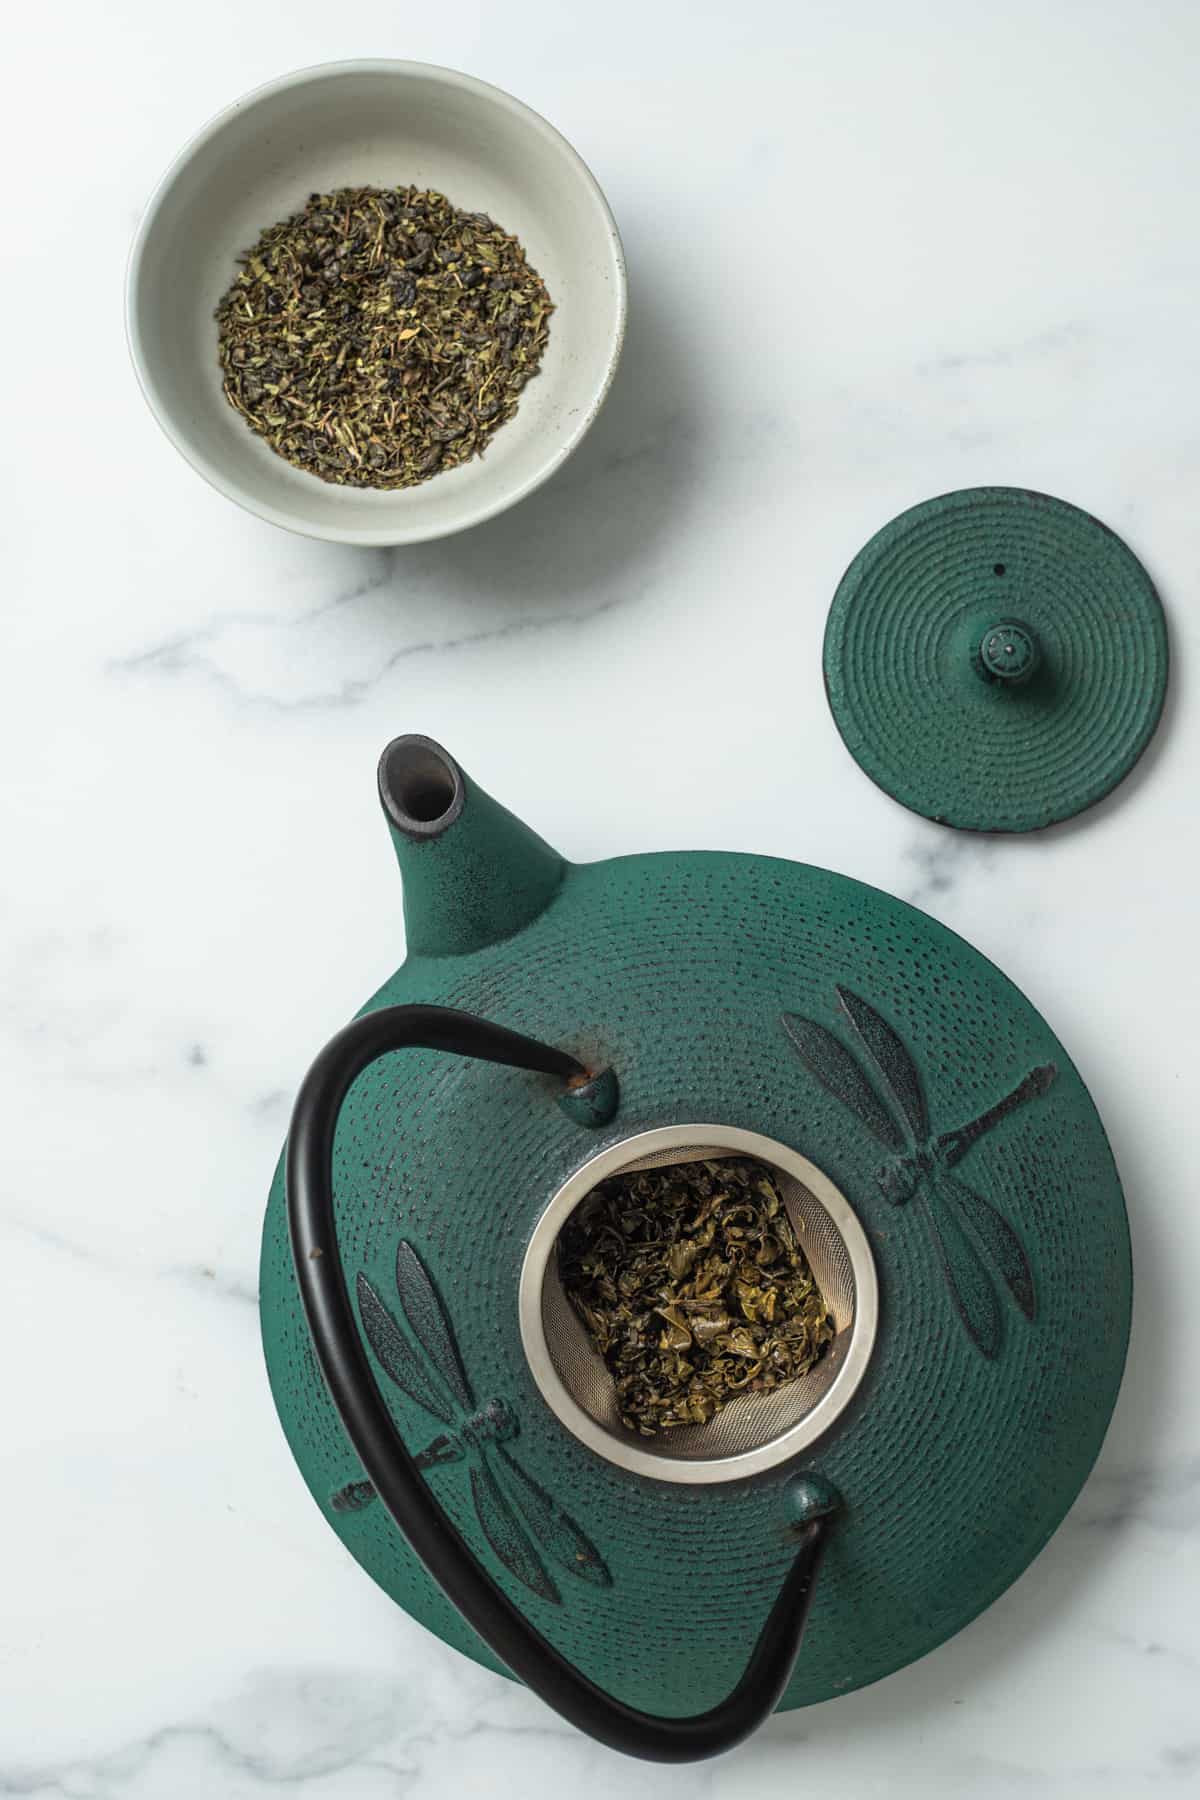 pot of tea with mint tea leaves